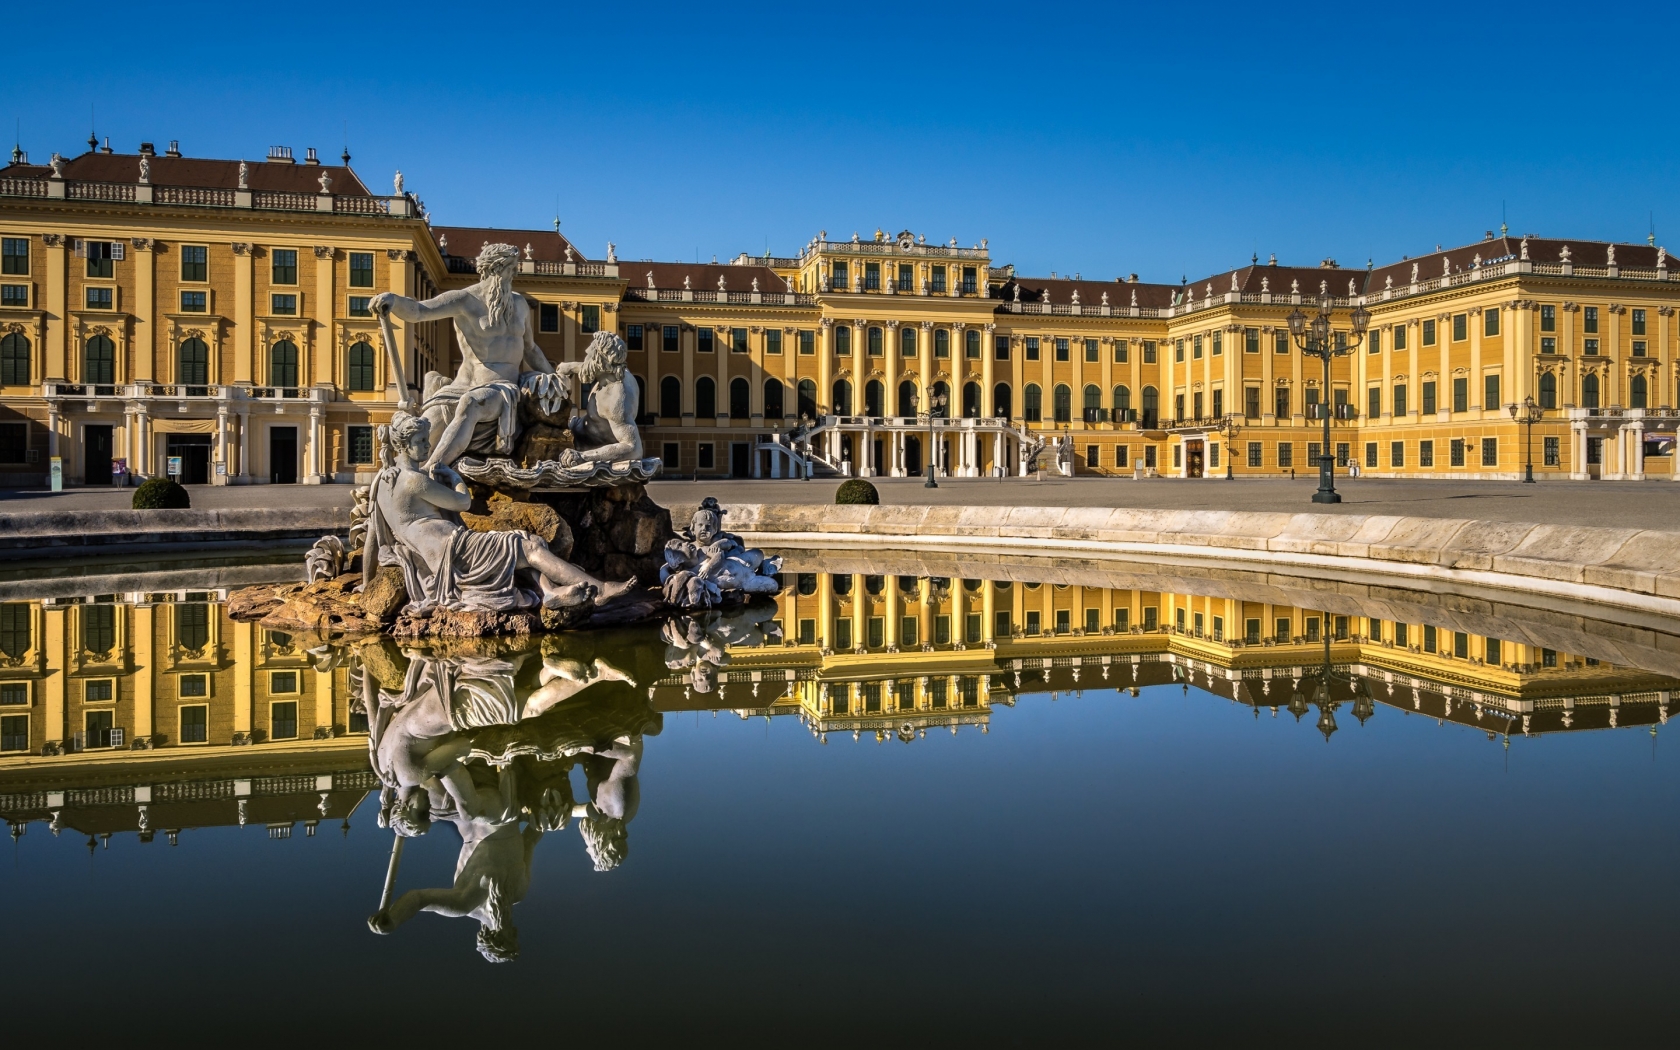 Schonbrunn Palace View for 1680 x 1050 widescreen resolution